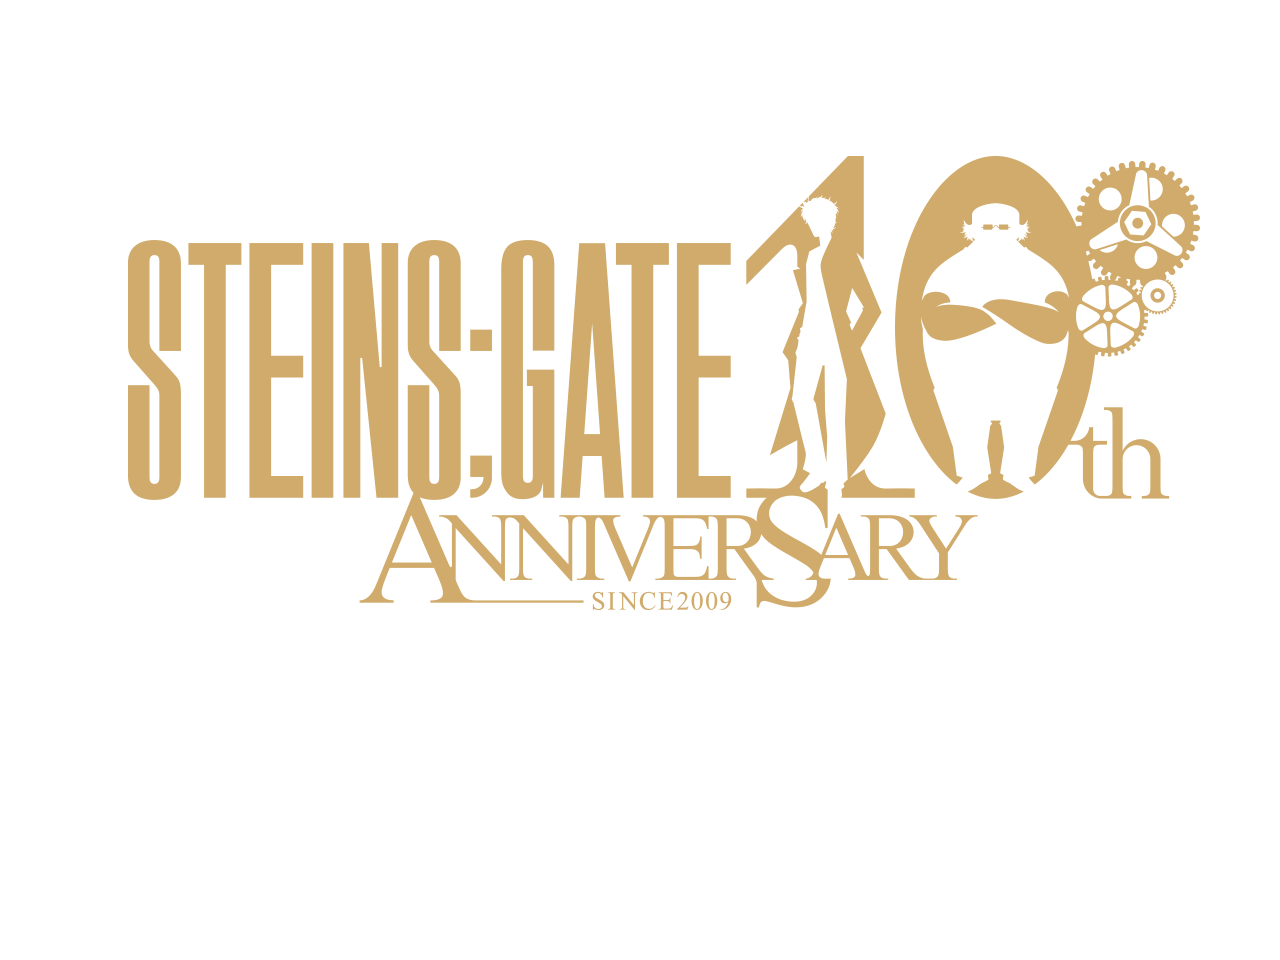 Steins Gate 10th Anniversary